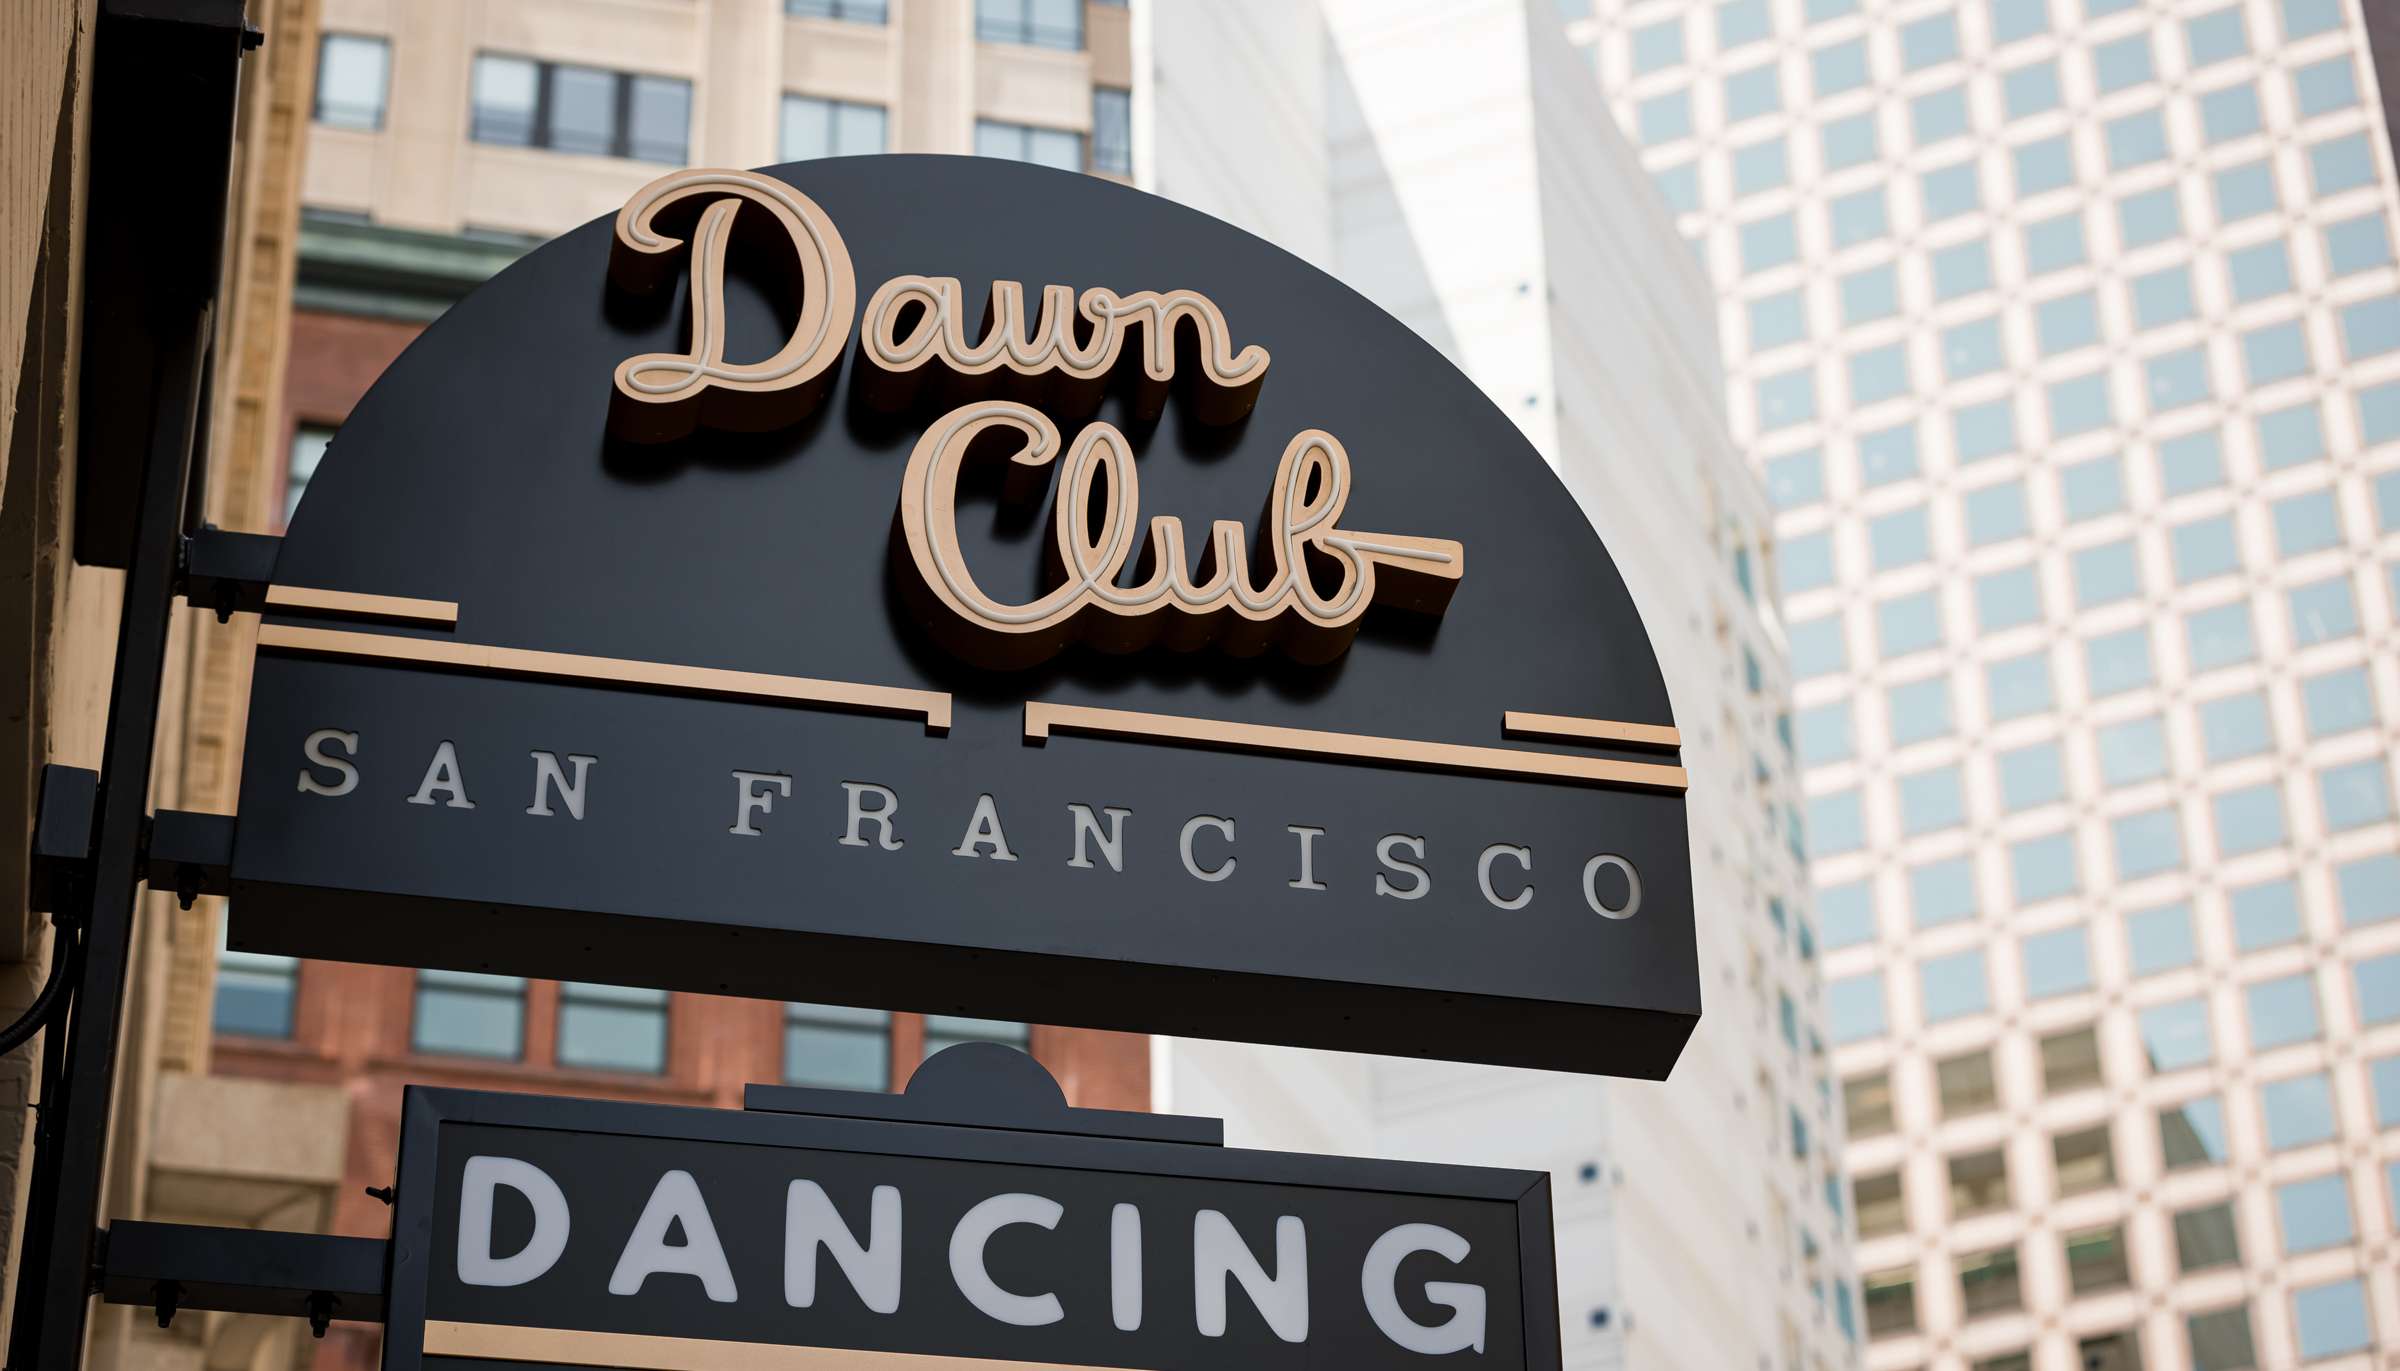 Read Dawn Club San Francisco by Bill Adams Photography